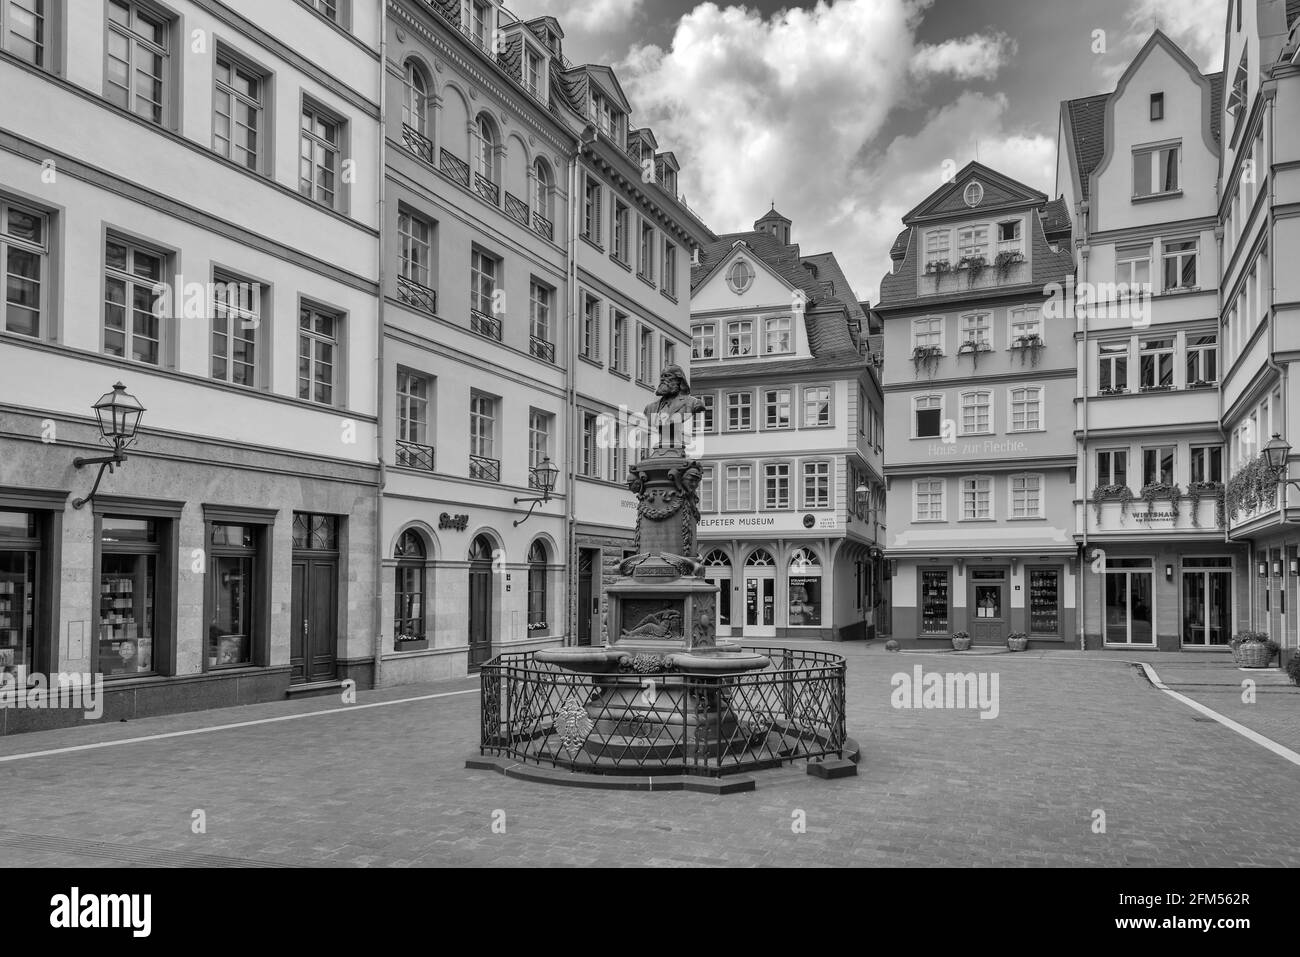 Stoltze-Brunnen auf dem Hühnermarkt in der rekonstruierten historischen Altstadt, Frankfurt, Deutschland Stockfoto